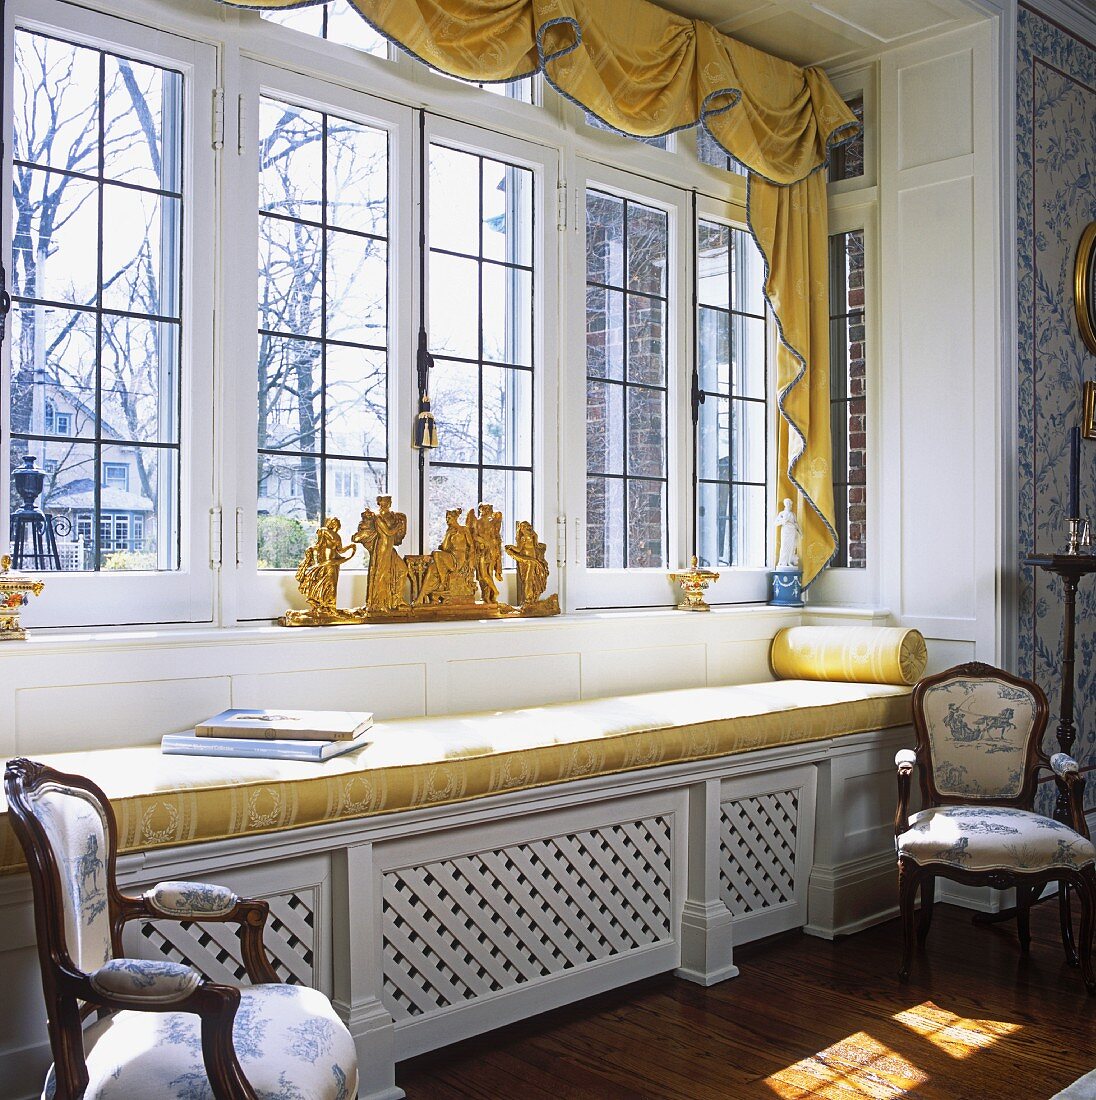 Fensterfront in einem Landhaus mit goldgelb gepolsteter Sitzbank und vergoldeter Skulptur